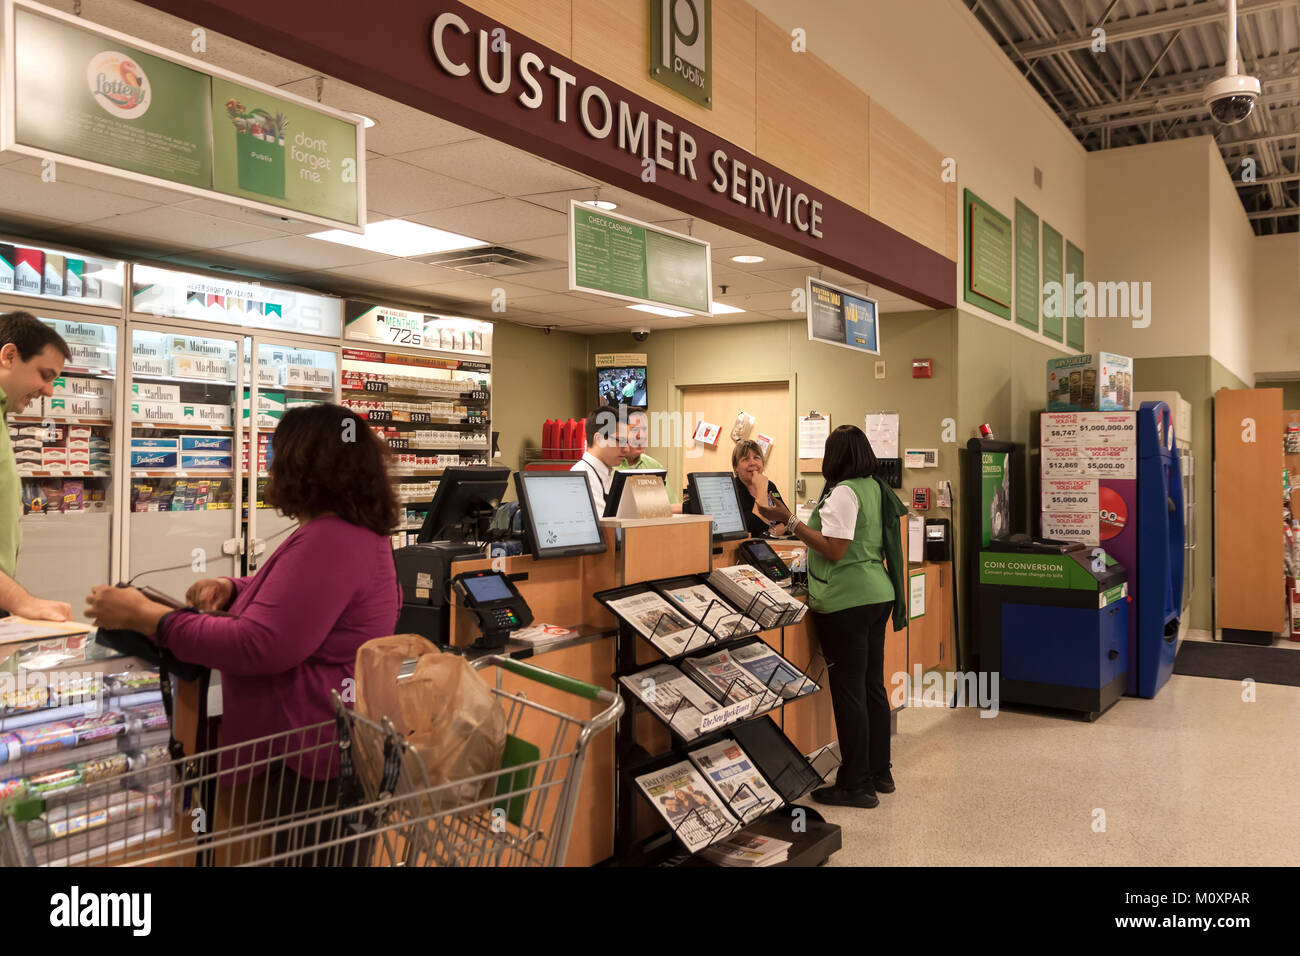 Customer service desk che gestisce i resi e reclami in un supermercato Publix in Florida, Stati Uniti d'America. Foto Stock